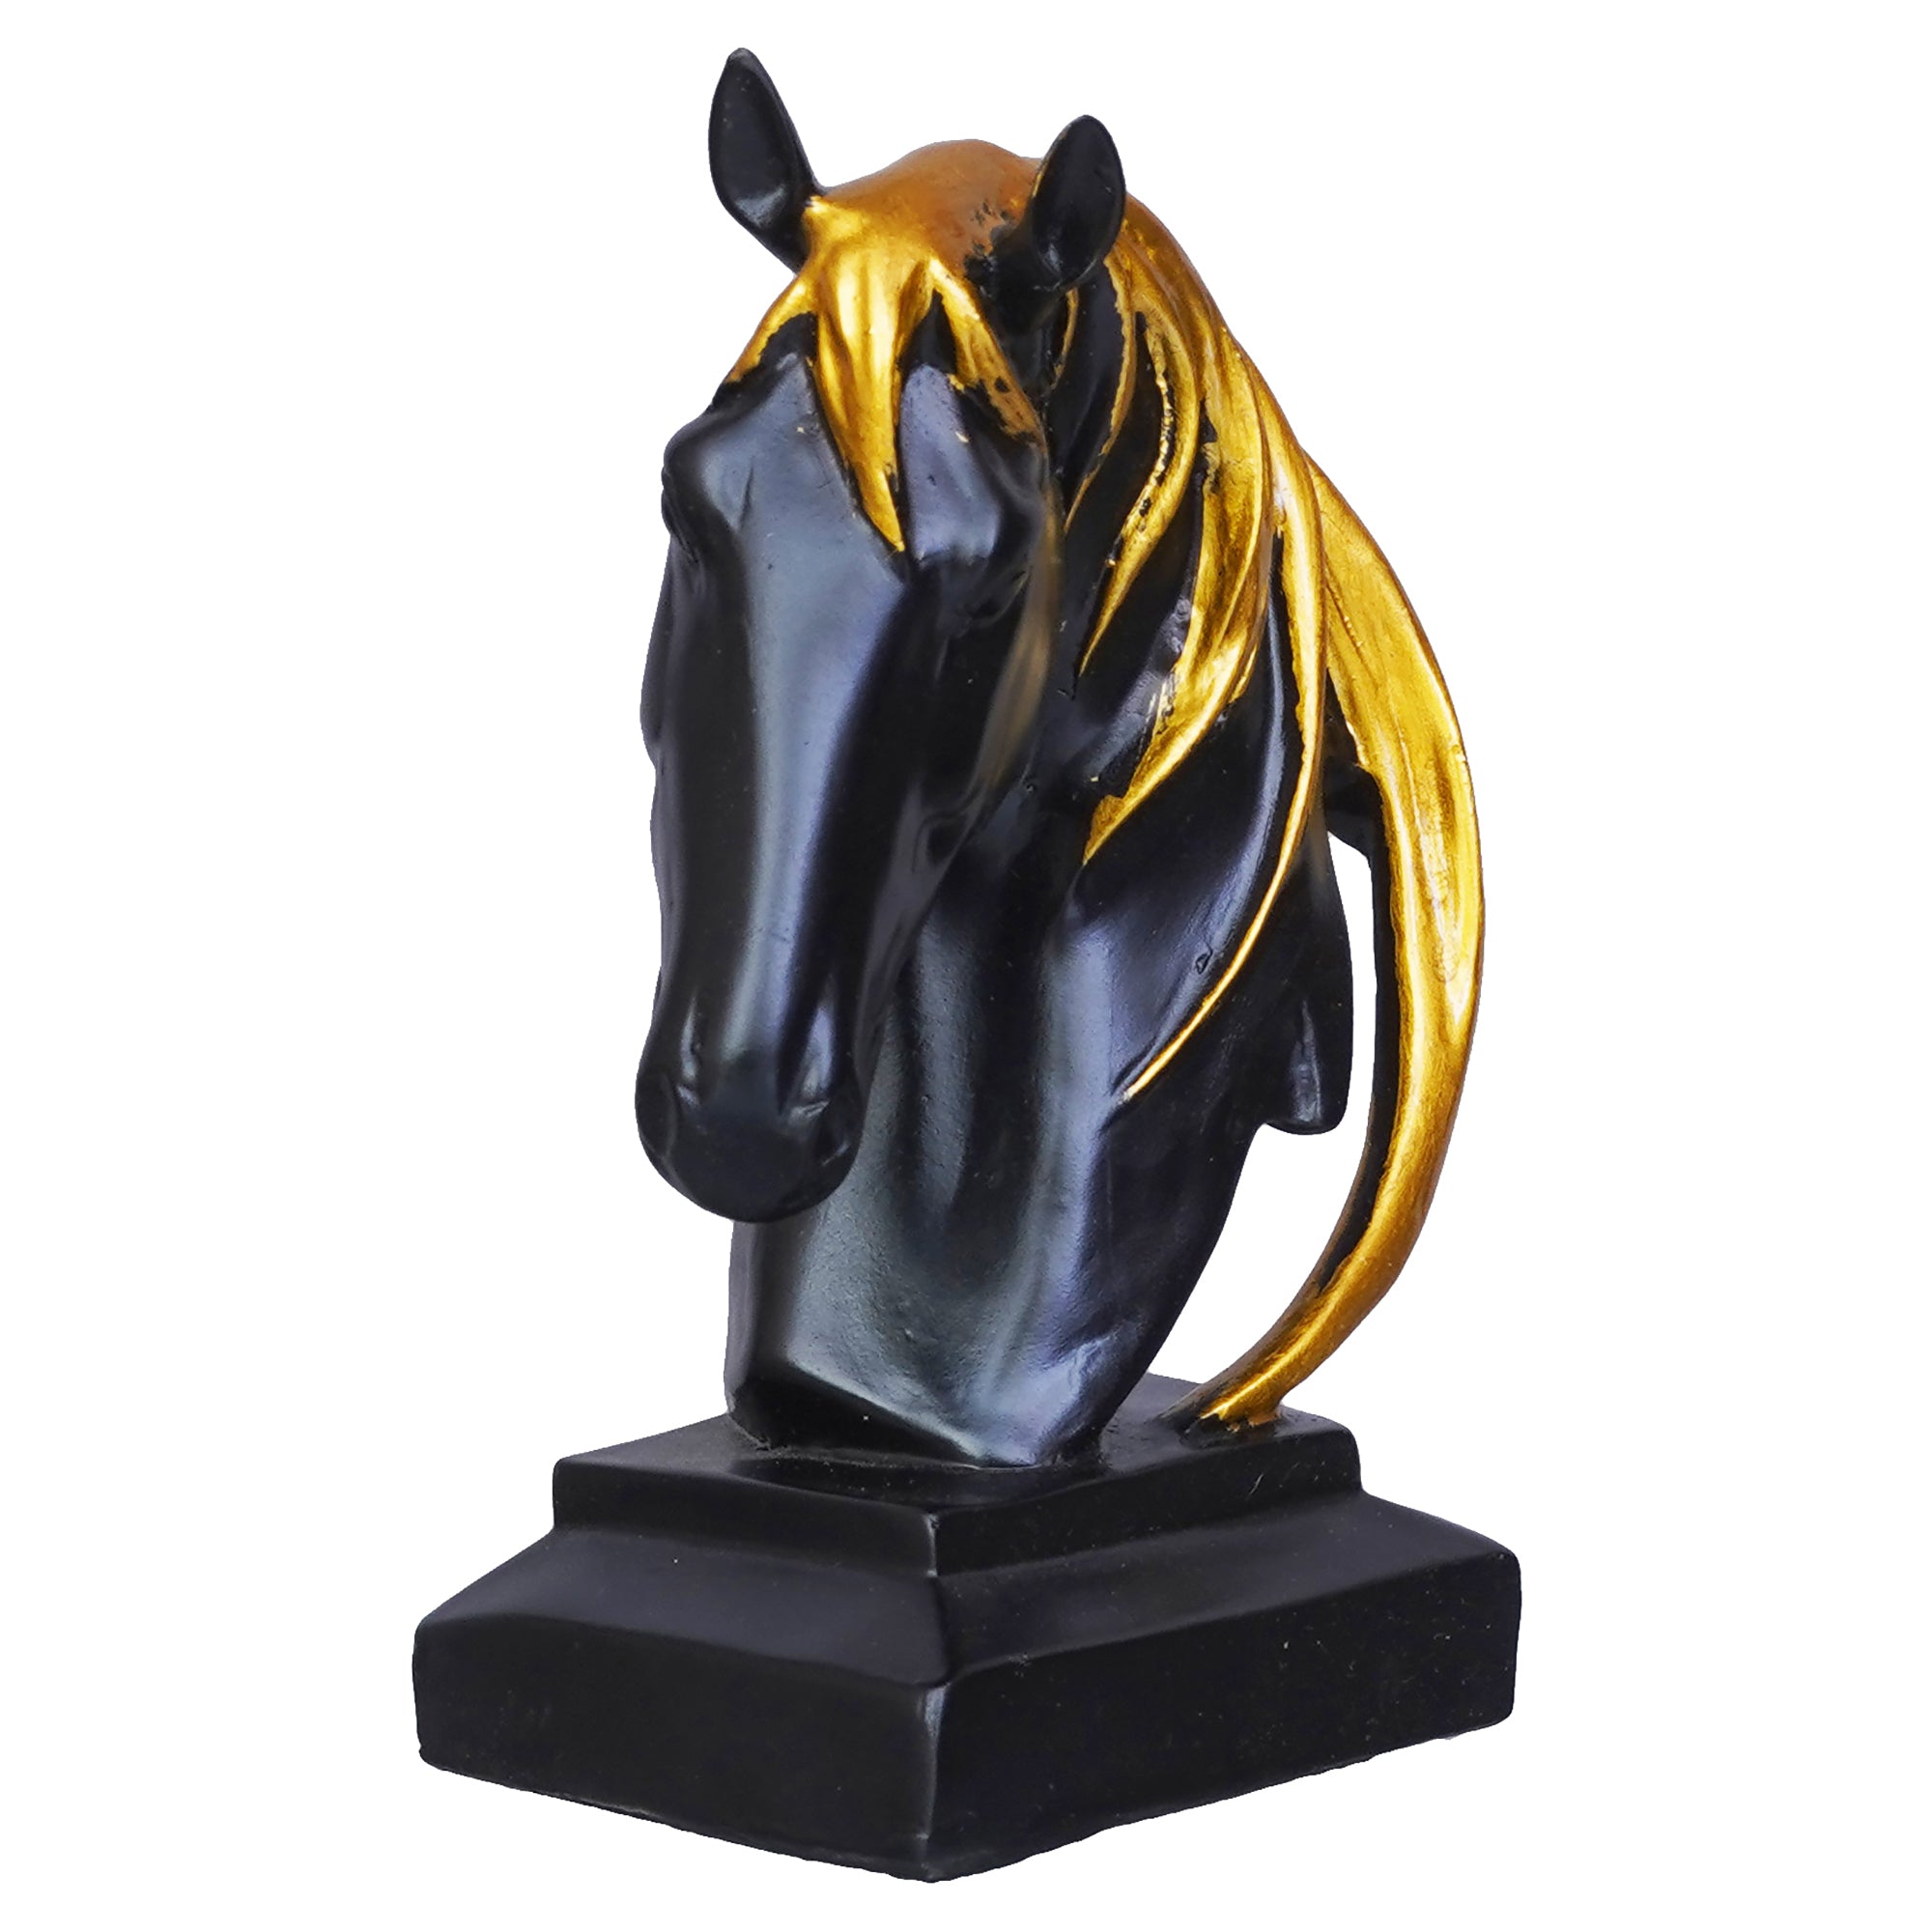 Black Horse Head Statue with Golden Hair Animal Figurine Showpiece 6